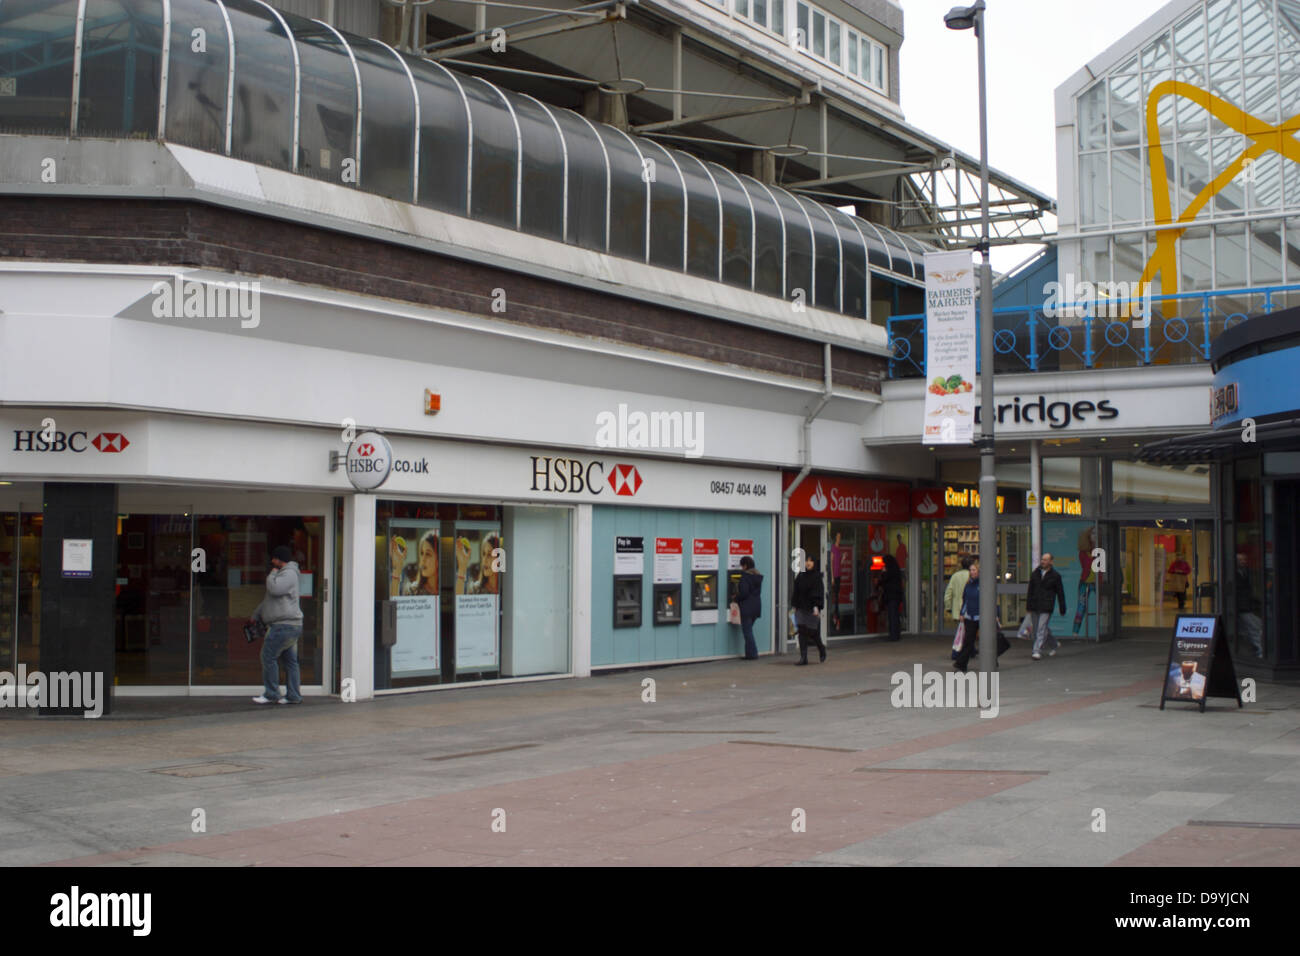 HSBC Bank, cash dispenser utilizzare, gli acquirenti che entrano ed escono i ponti shopping center a Sunderland. Foto Stock